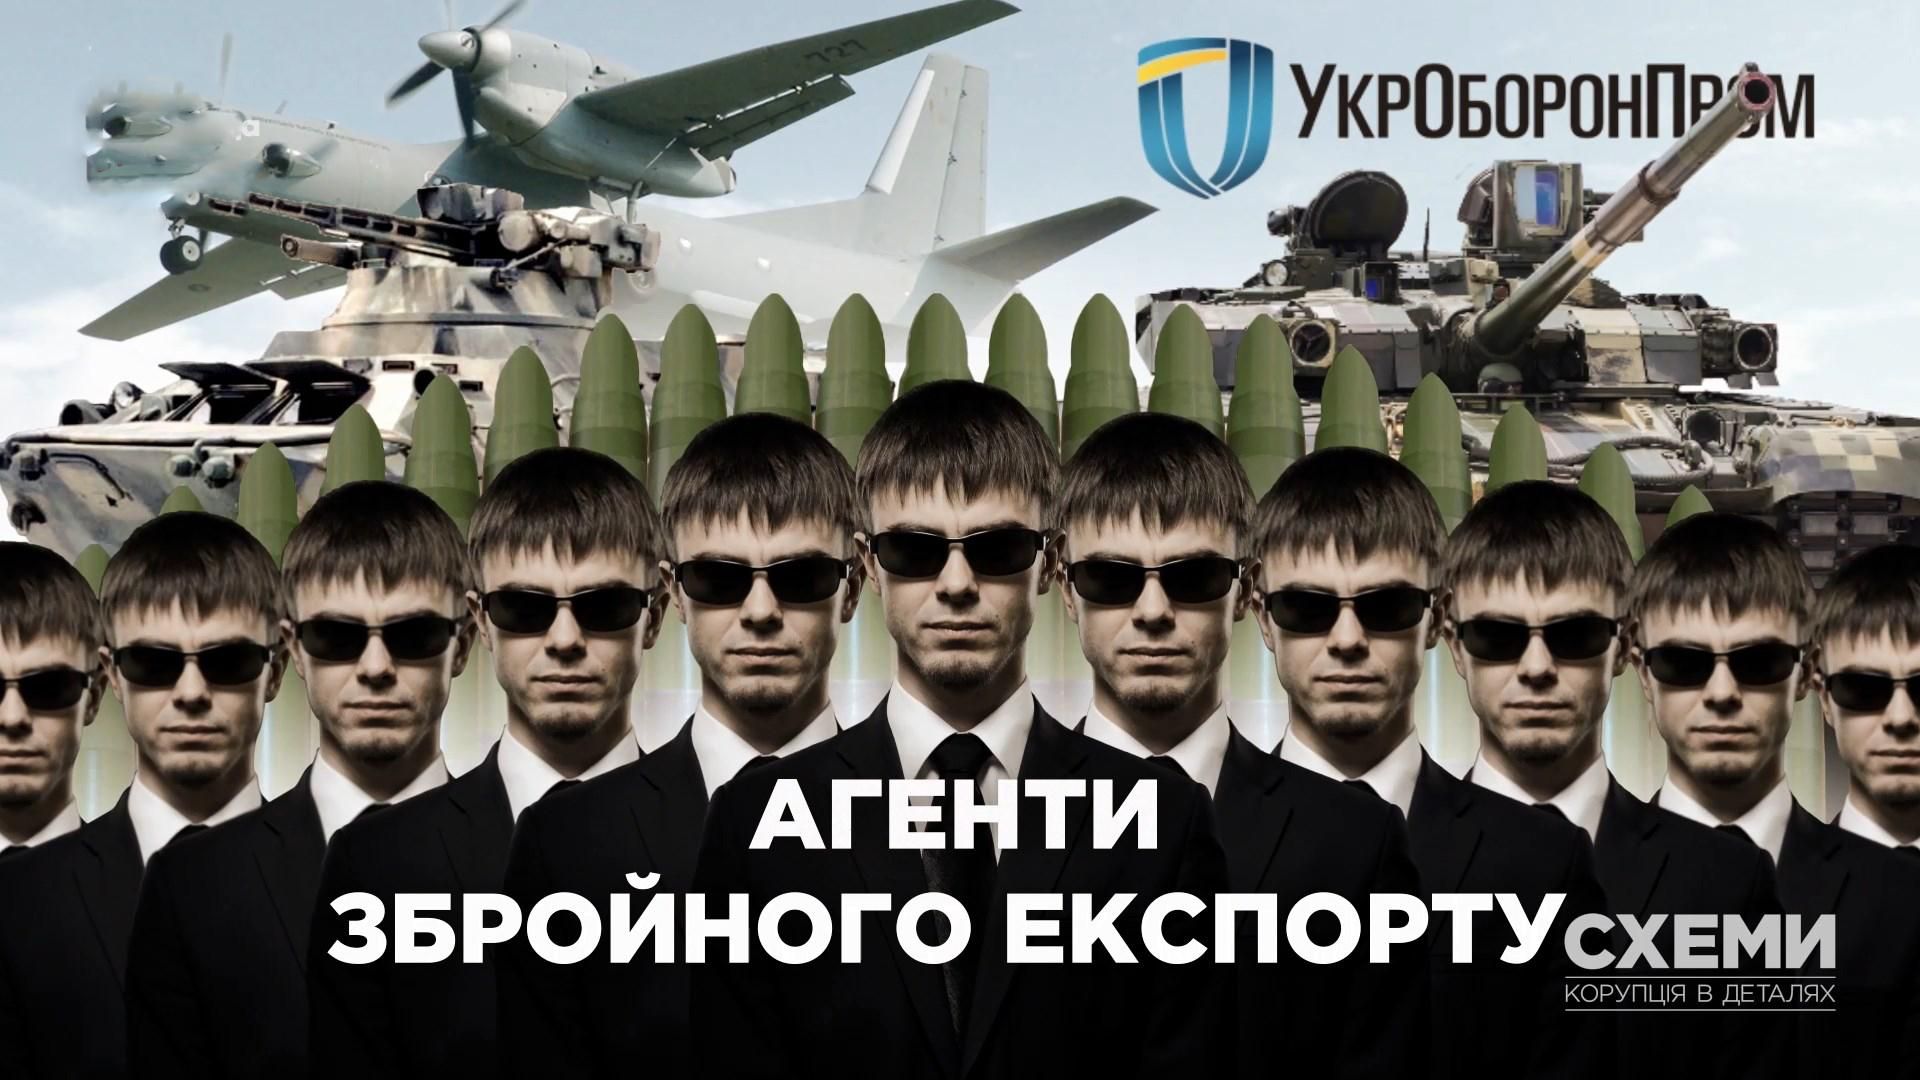 Як відбувається експорт української зброї та військової техніки: таємні незаконні операції